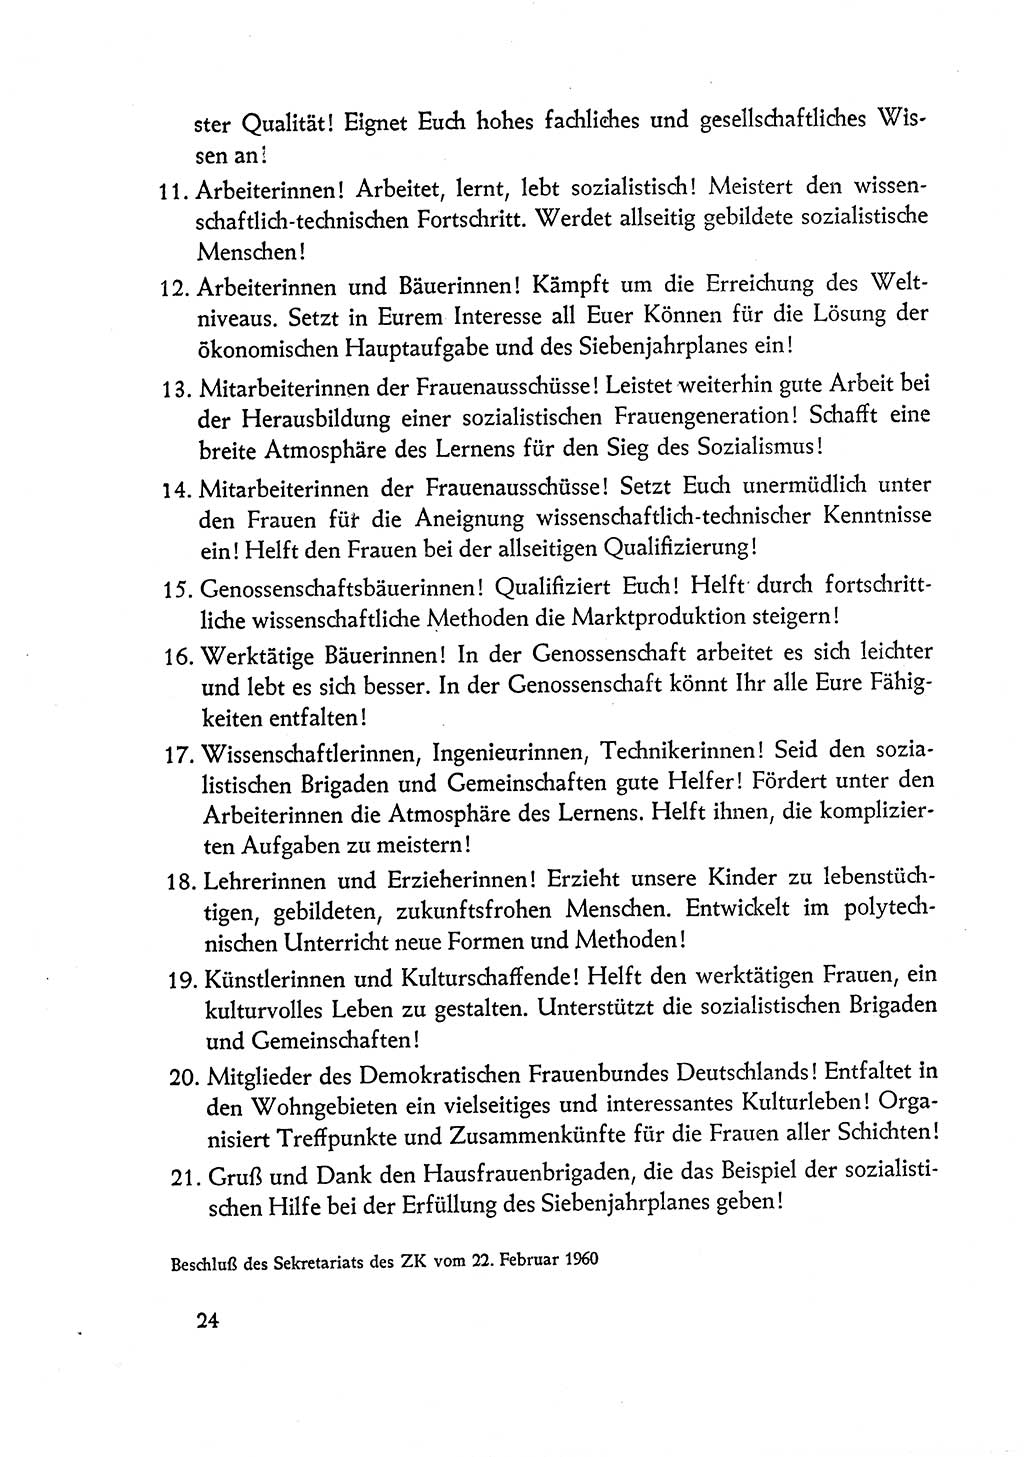 Dokumente der Sozialistischen Einheitspartei Deutschlands (SED) [Deutsche Demokratische Republik (DDR)] 1960-1961, Seite 24 (Dok. SED DDR 1960-1961, S. 24)